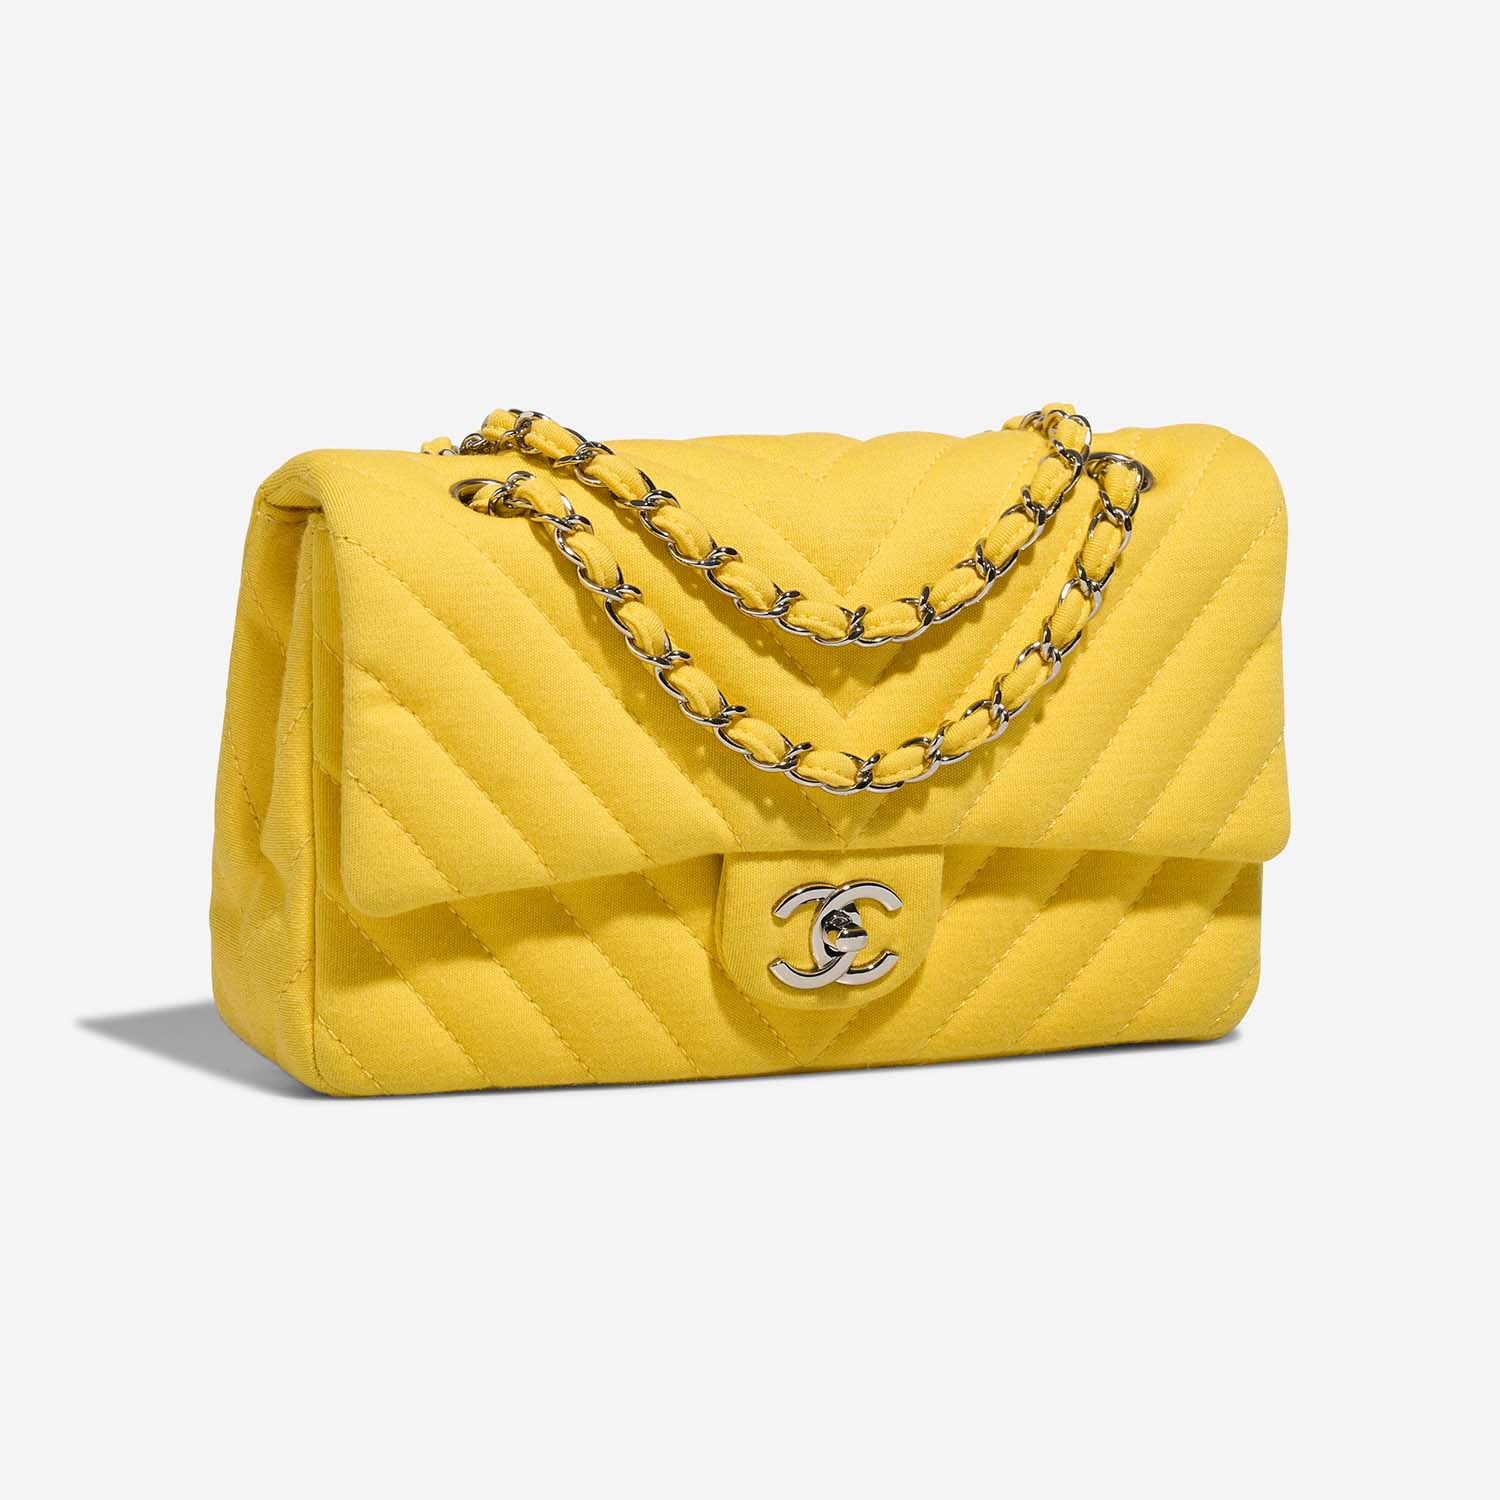 Chanel Timeless Medium Yellow Side Front | Verkaufen Sie Ihre Designer-Tasche auf Saclab.com